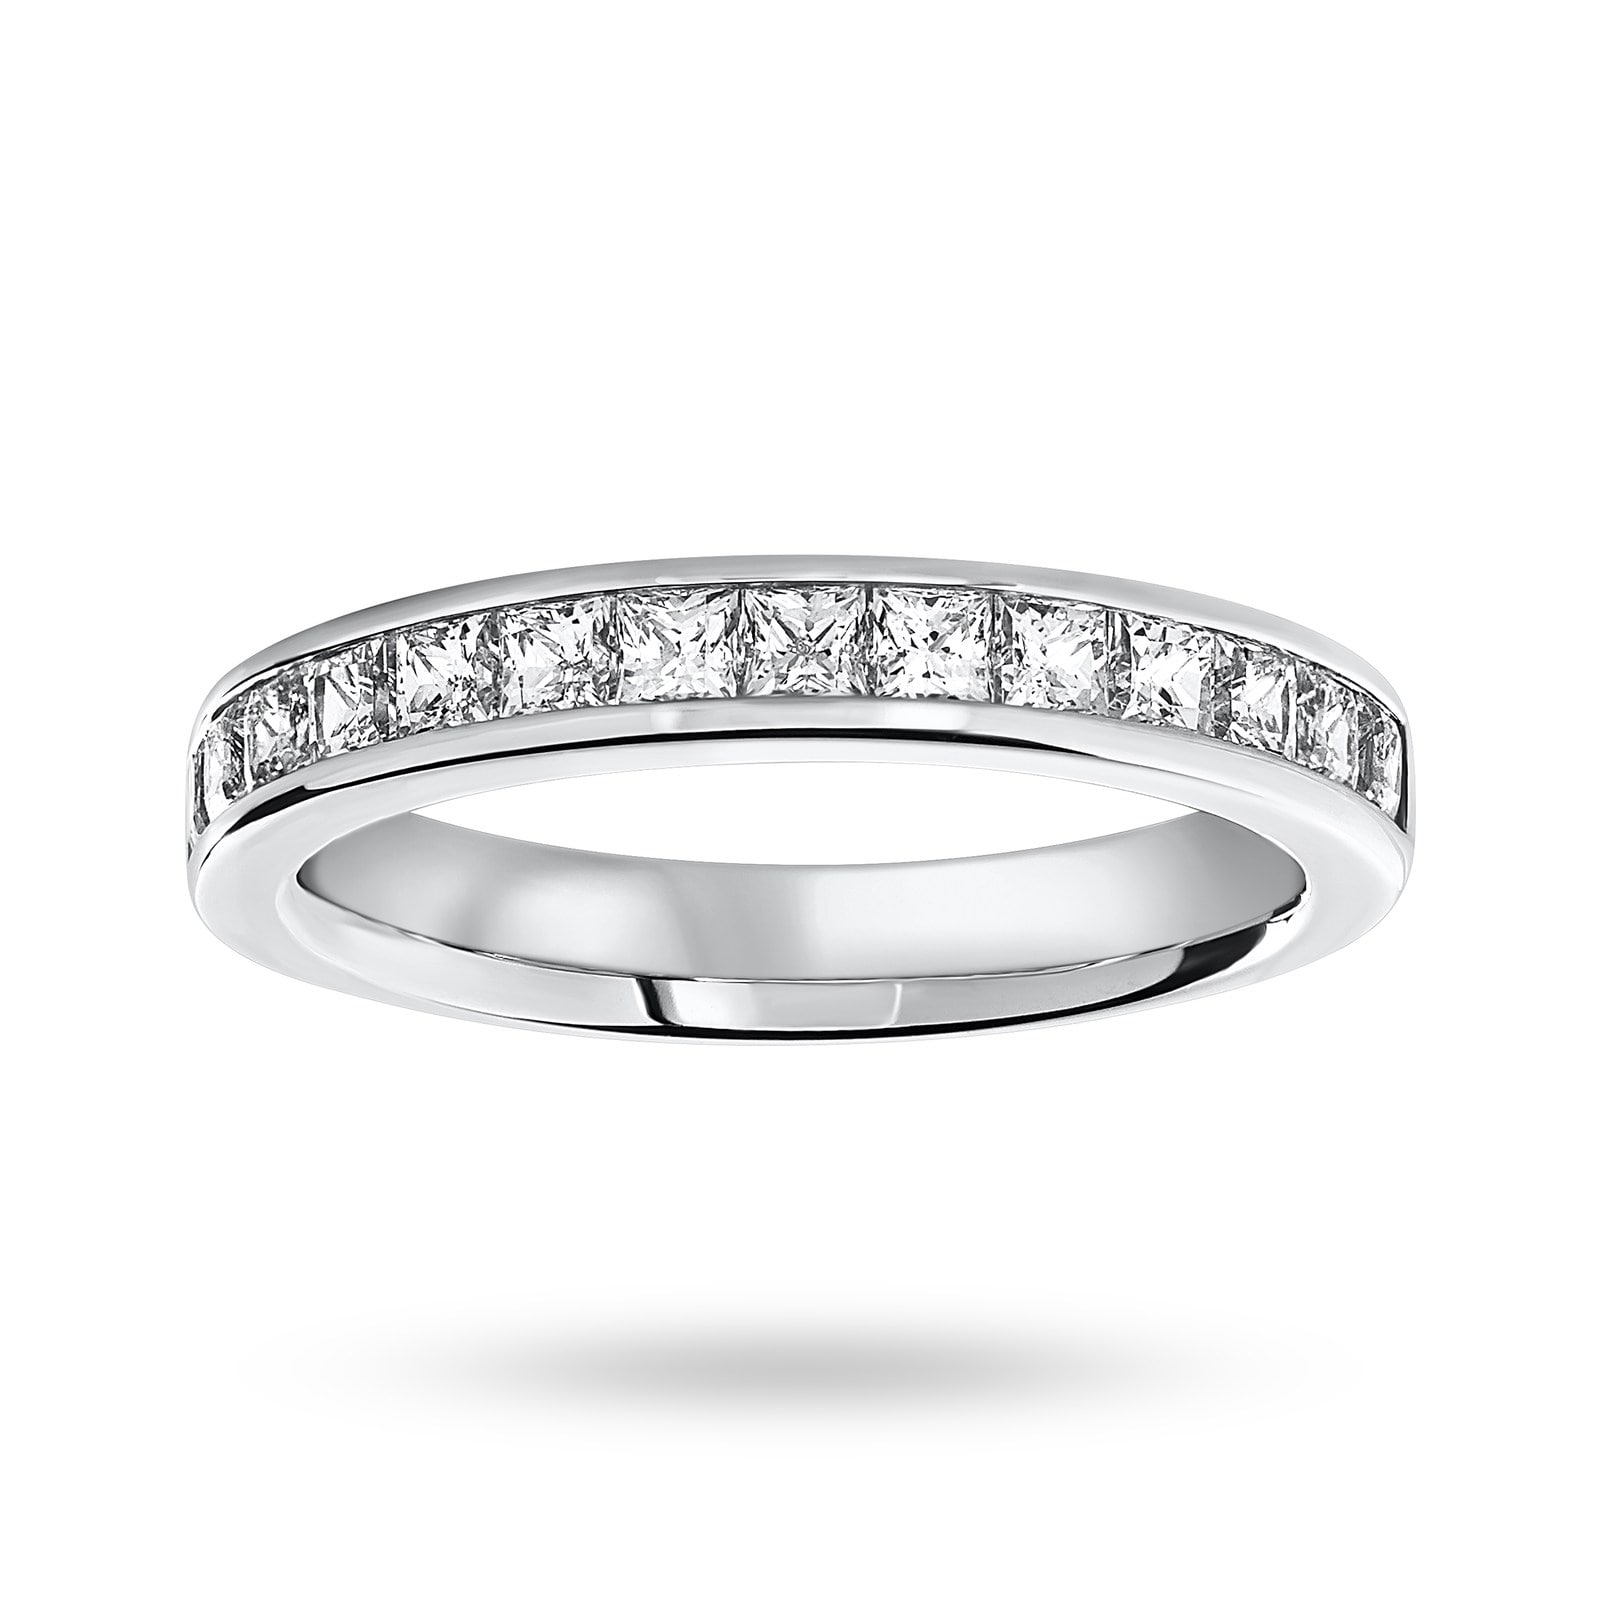 18 Carat White Gold 1.00 Carat Princess Cut Half Eternity Ring - Ring Size M